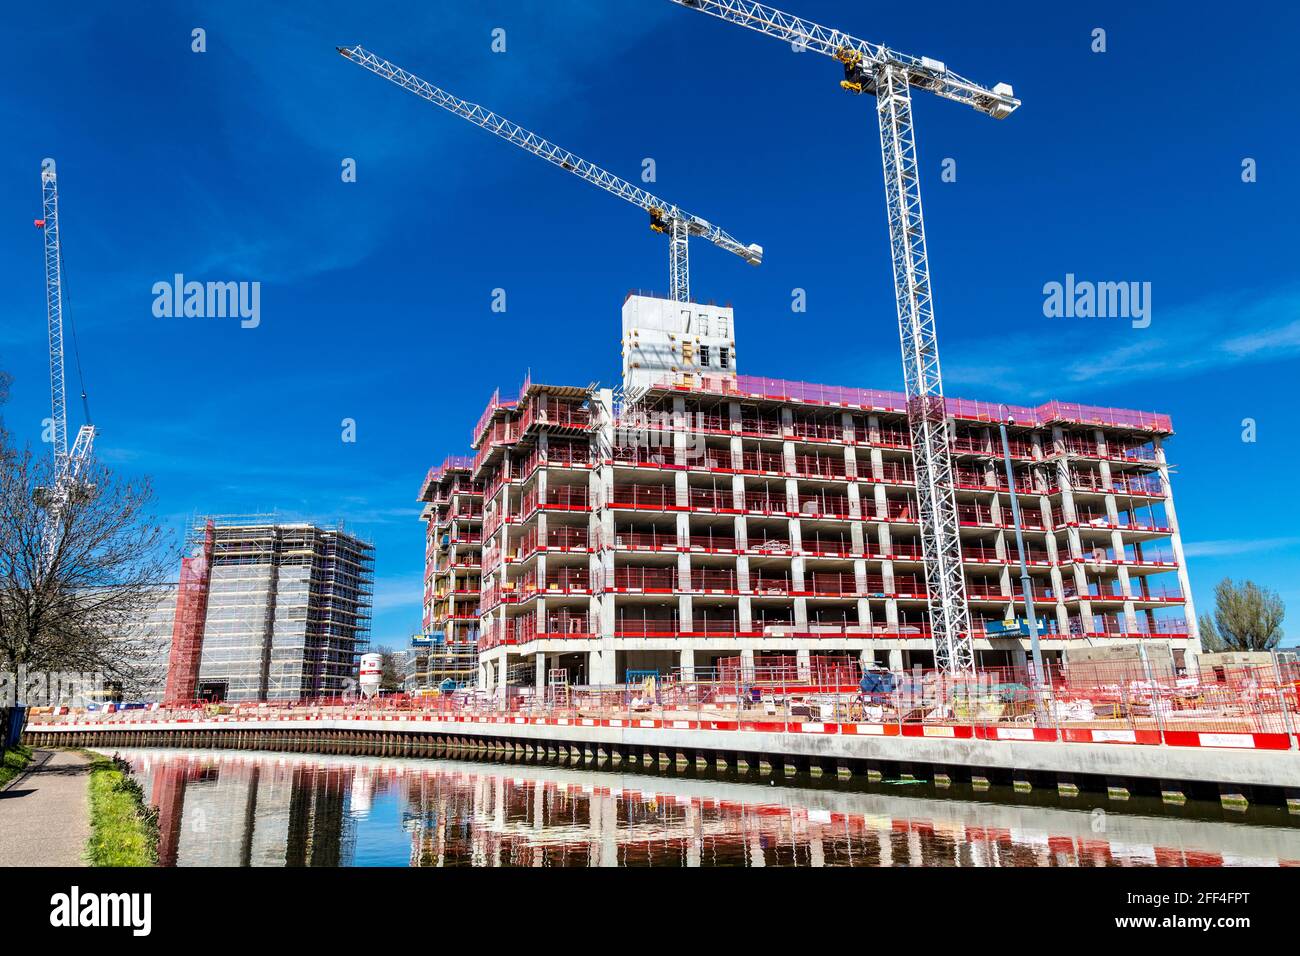 Affinity Tower in costruzione presso lo sviluppo residenziale Grand Union ad Alperton, Londra, Regno Unito Foto Stock